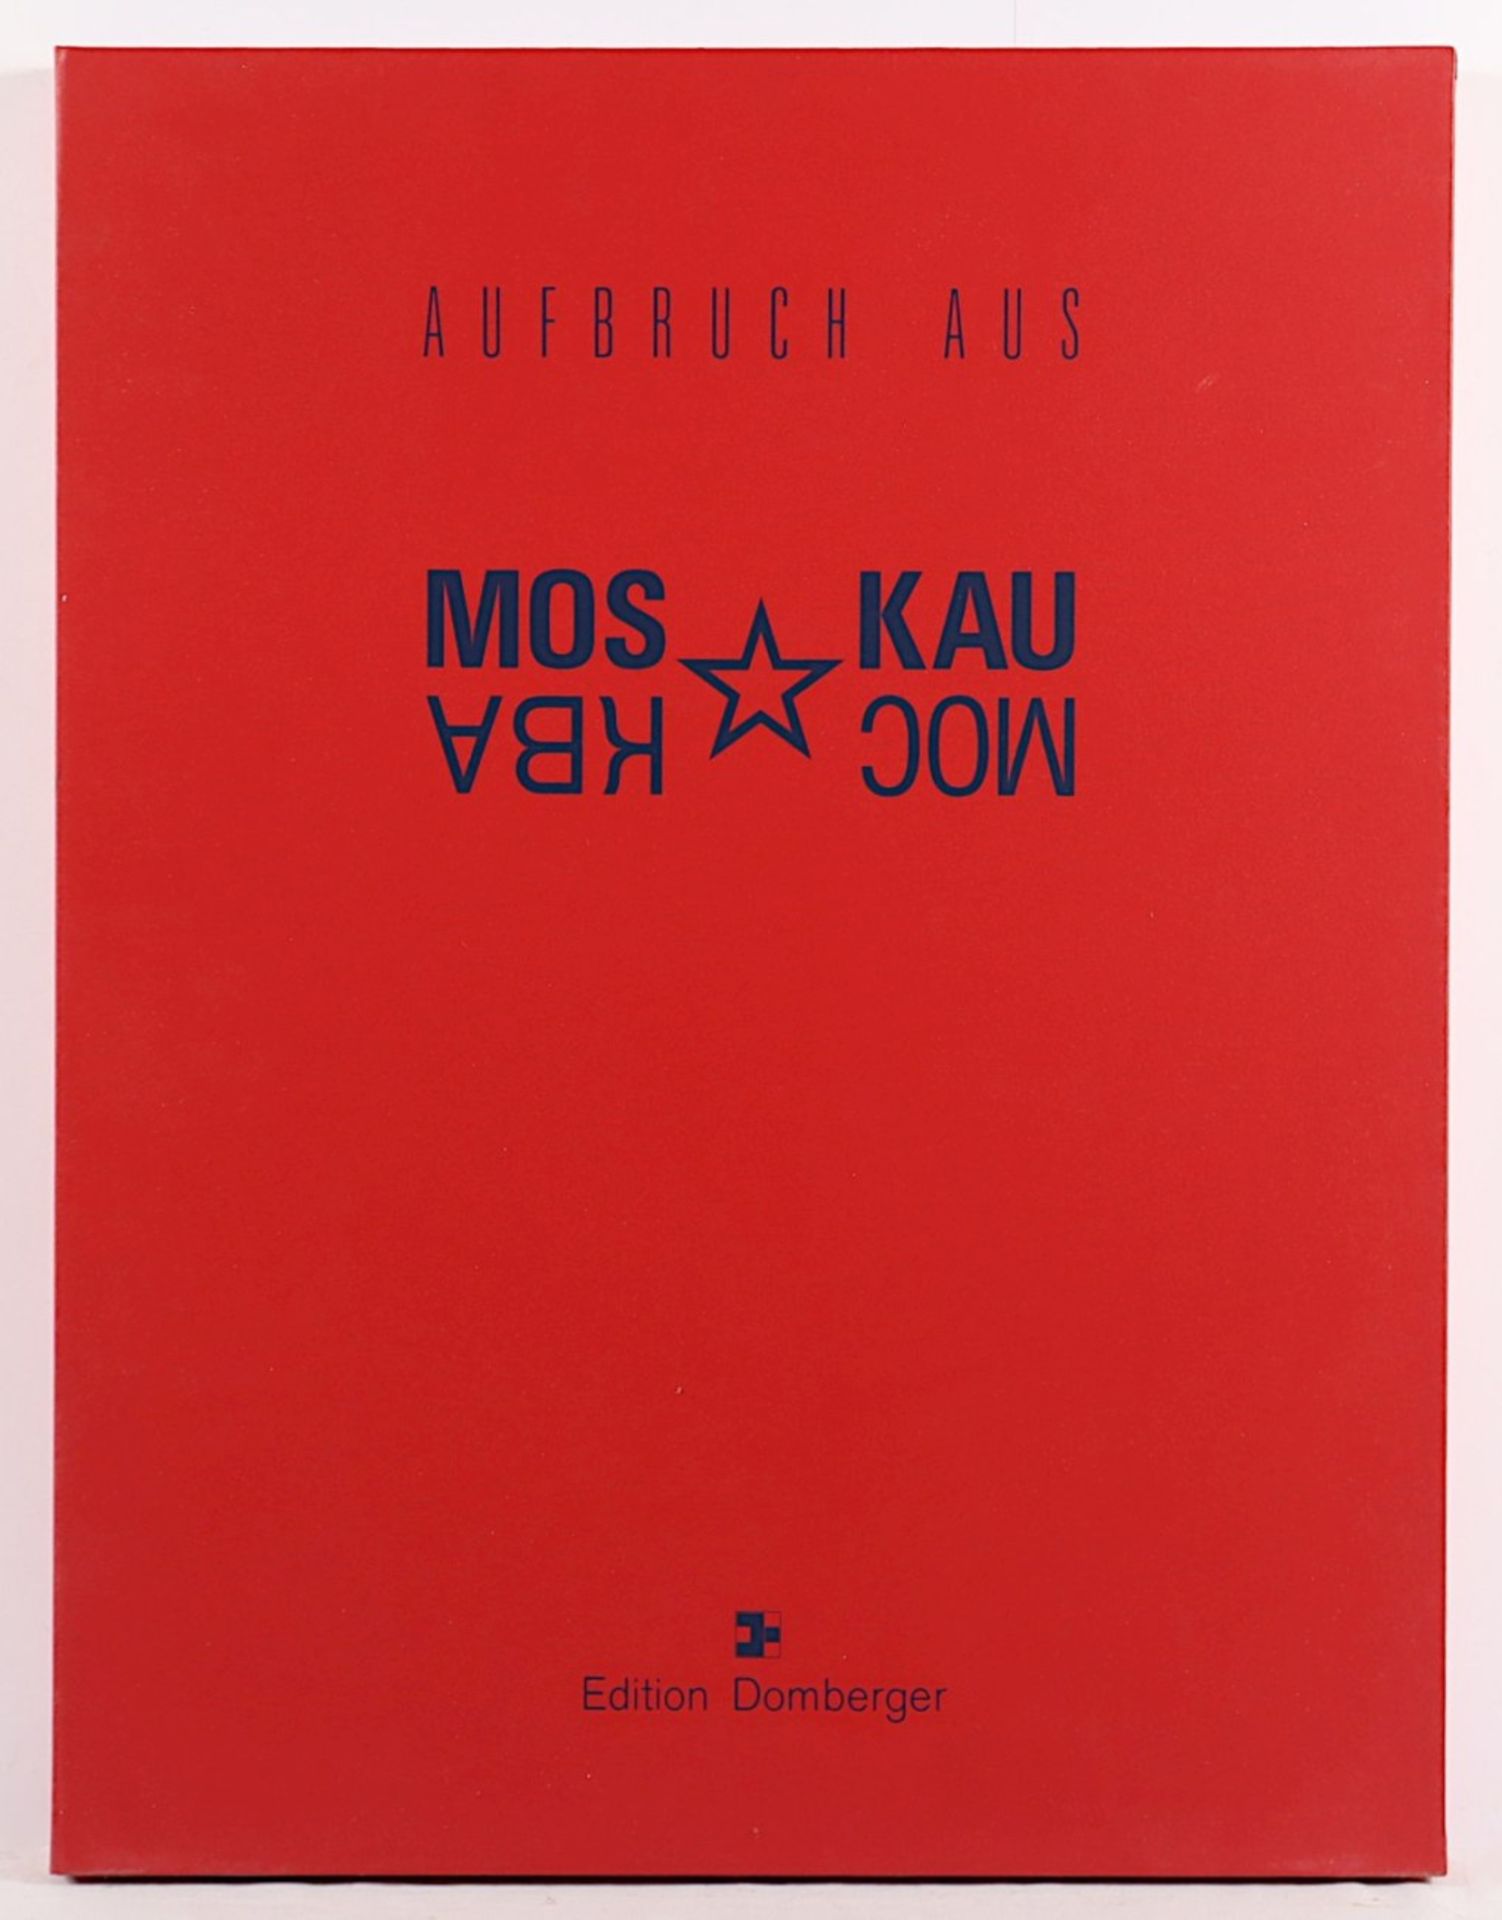 KUNSTMAPPE, "Aufbruch aus Moskau", Edition Domberger, 1990. Portfolio-Kassette 20 Arbeiten - Image 11 of 12